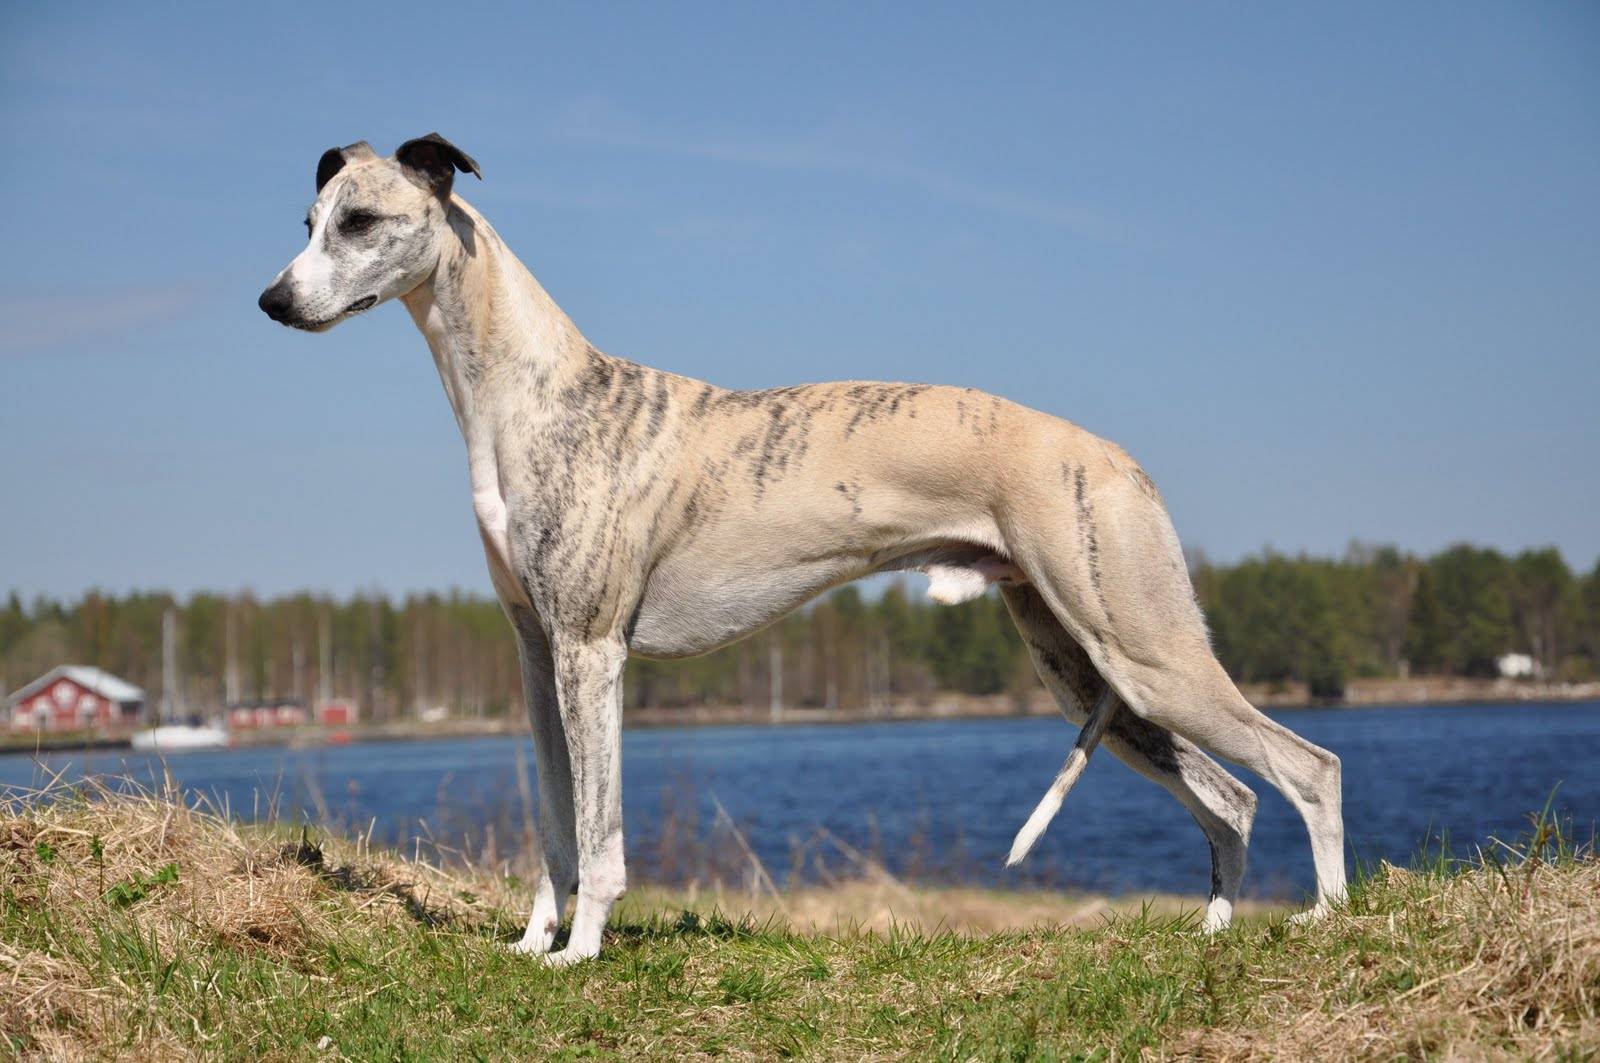 Грейхаунд: фото, видео и описание породы английских борзых собак грейхаунд, охота с грйхаундом